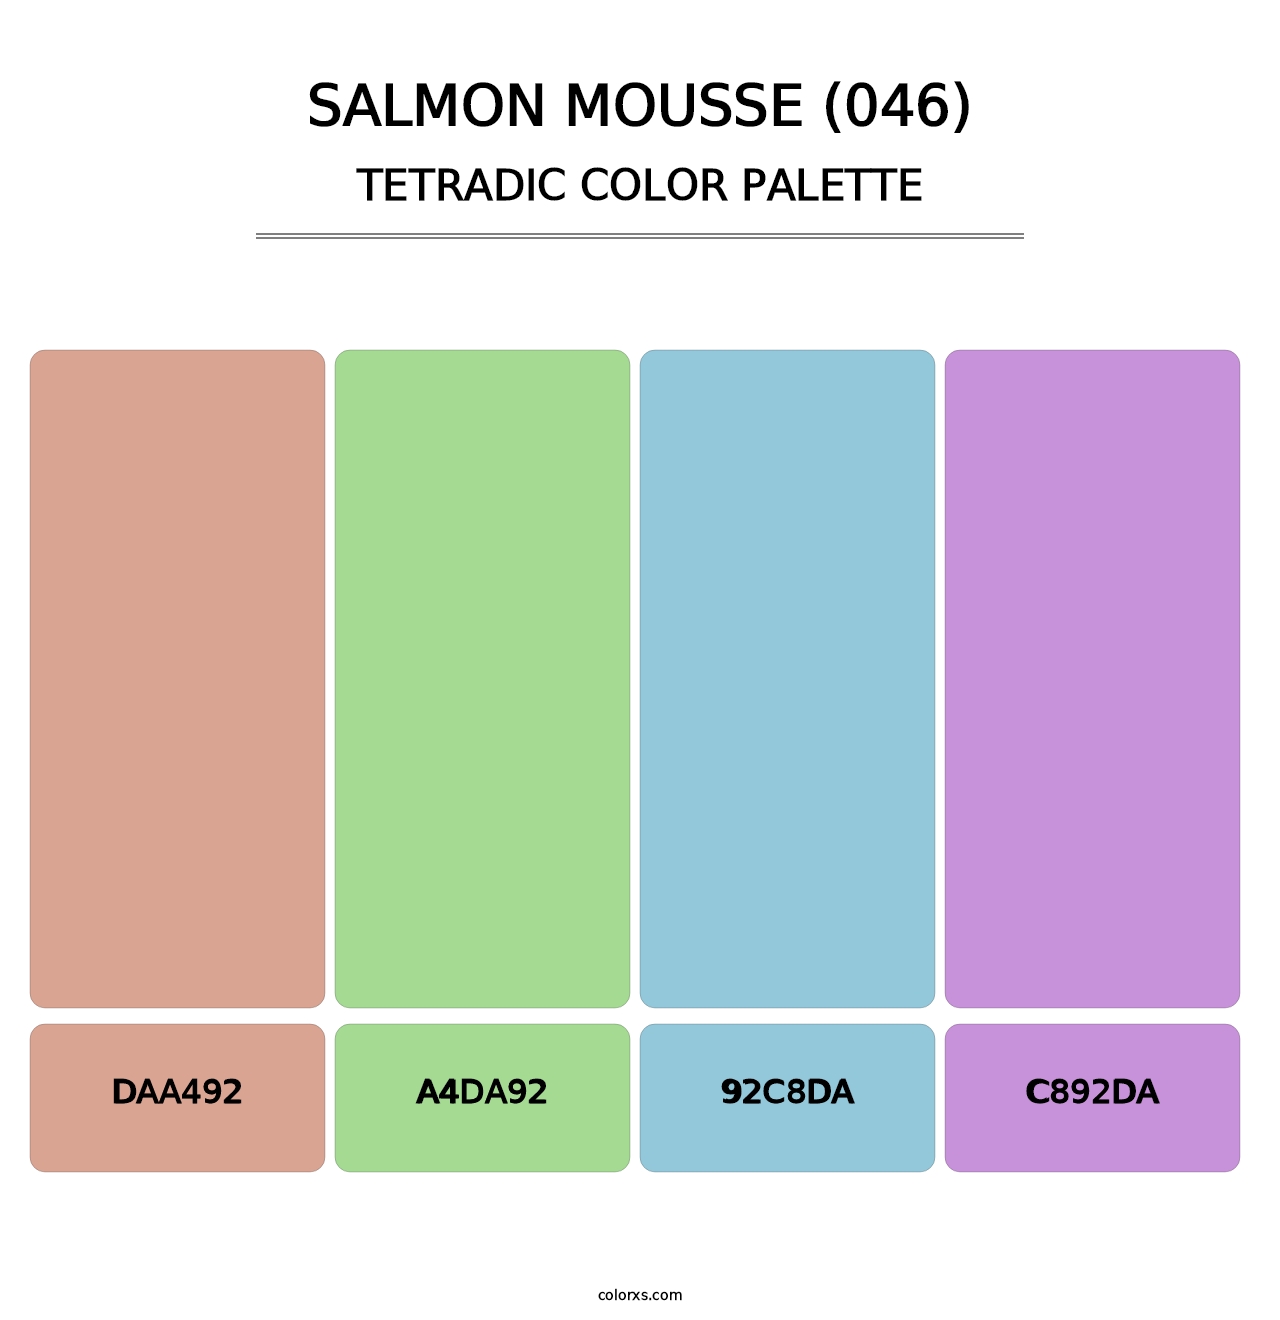 Salmon Mousse (046) - Tetradic Color Palette